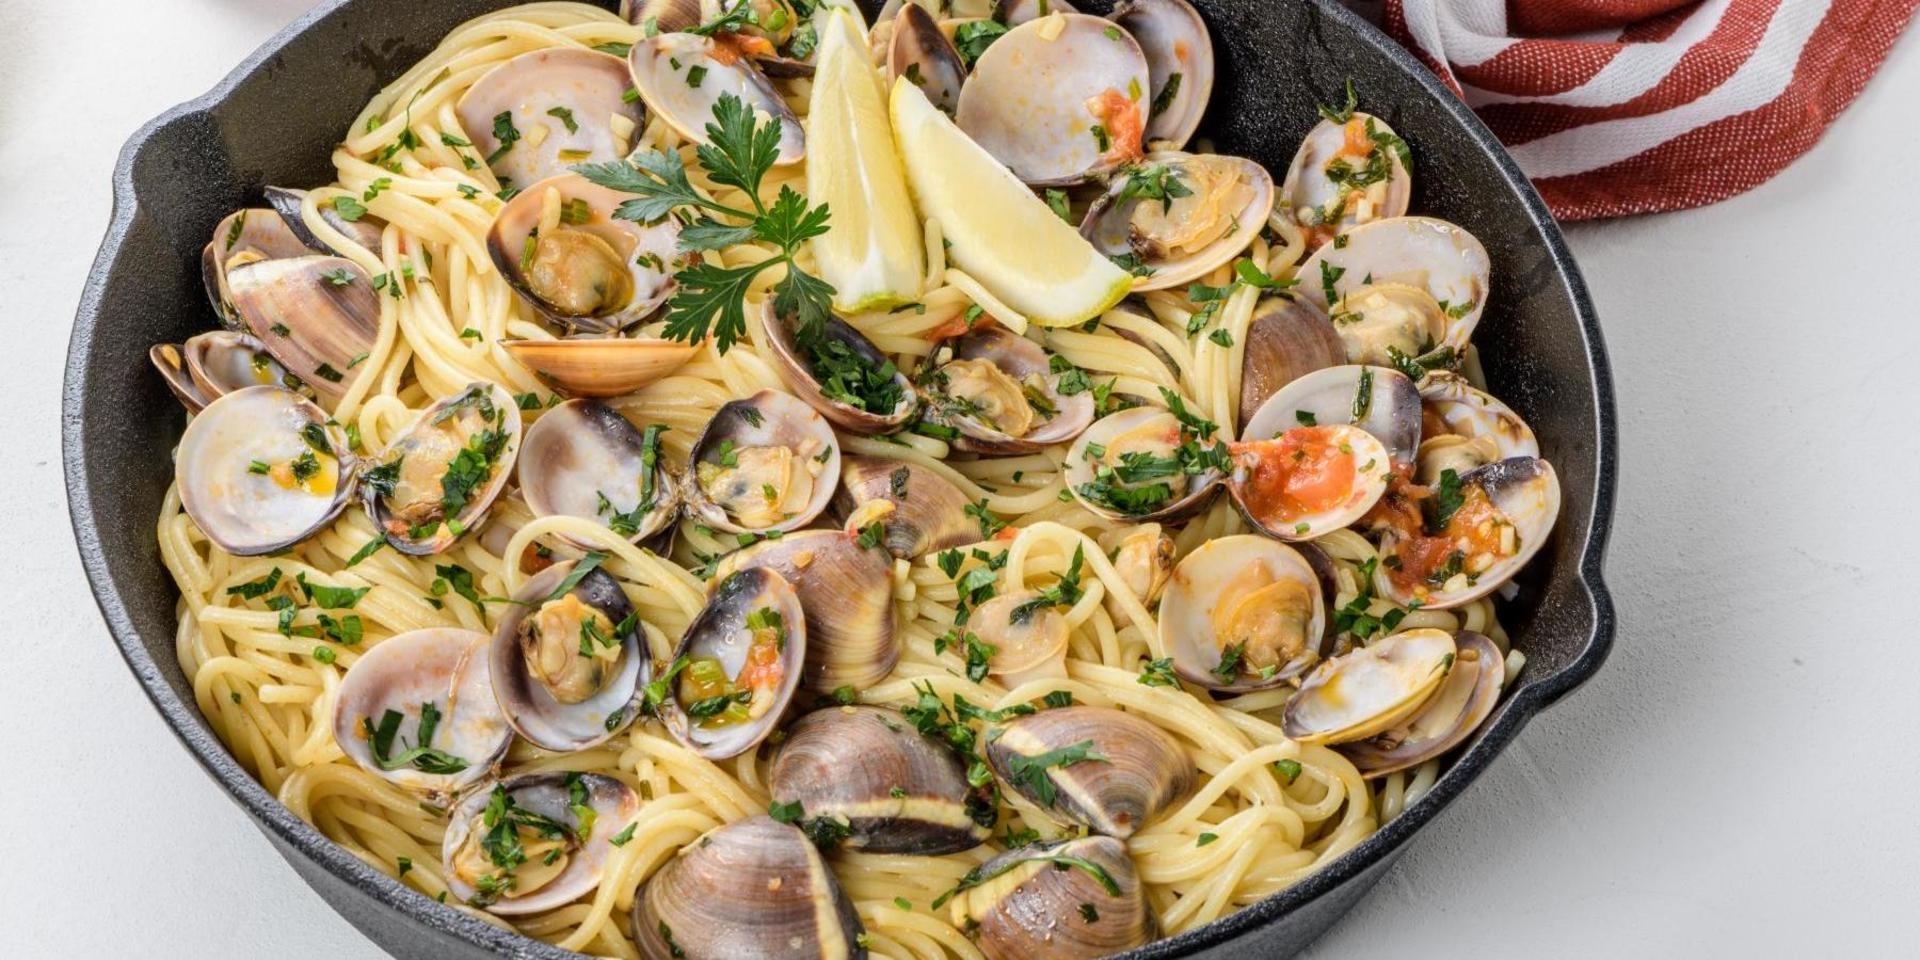 Spaghetti alle vongole, spaghetti med musslor, är en maträtt som är mycket populär i hela Italien.